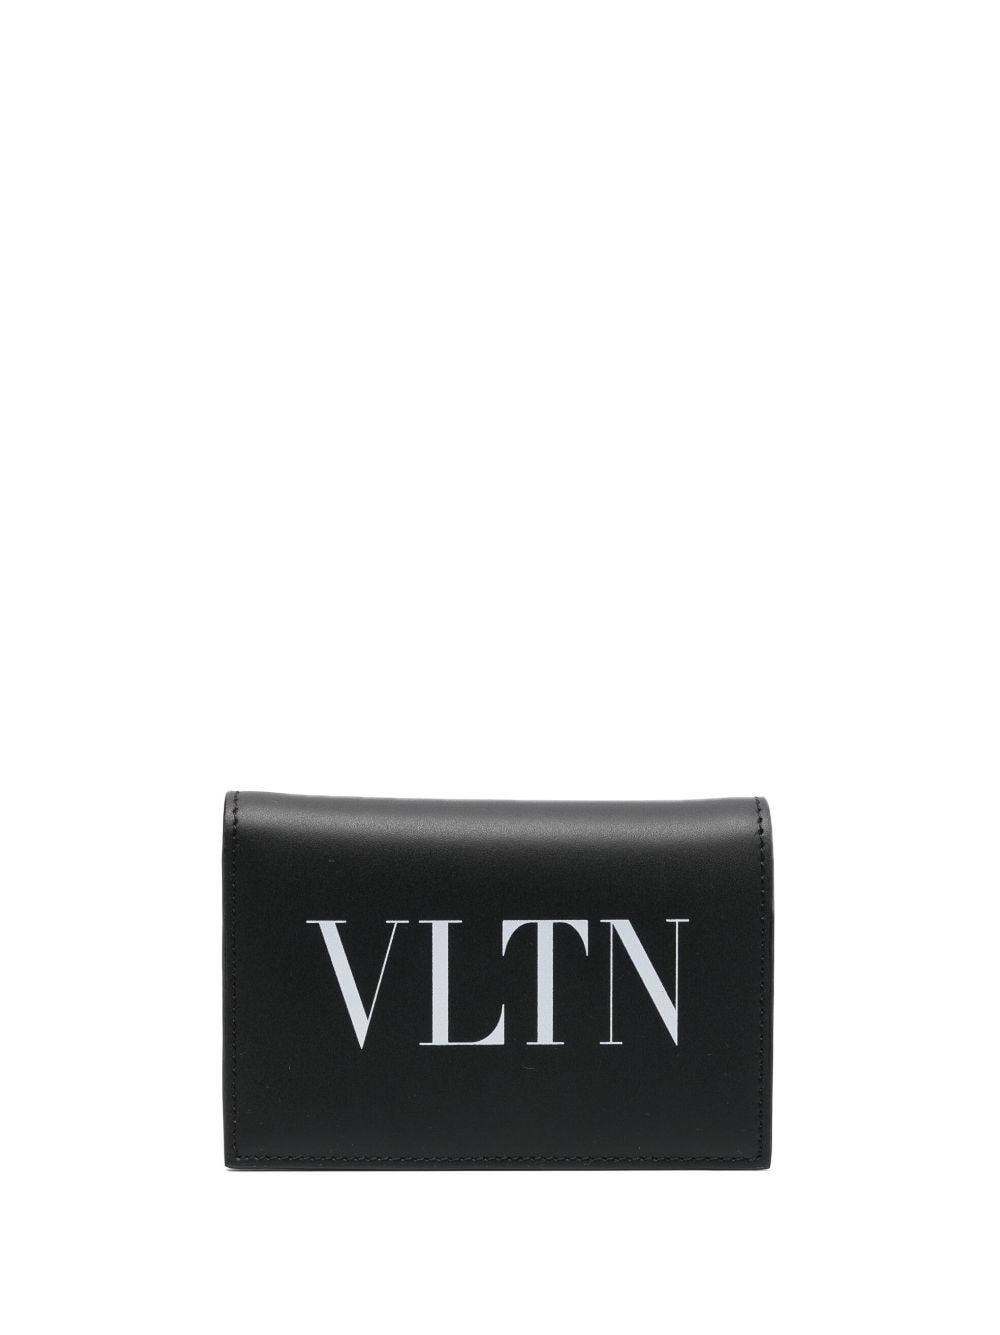 Vltn leather credit card case